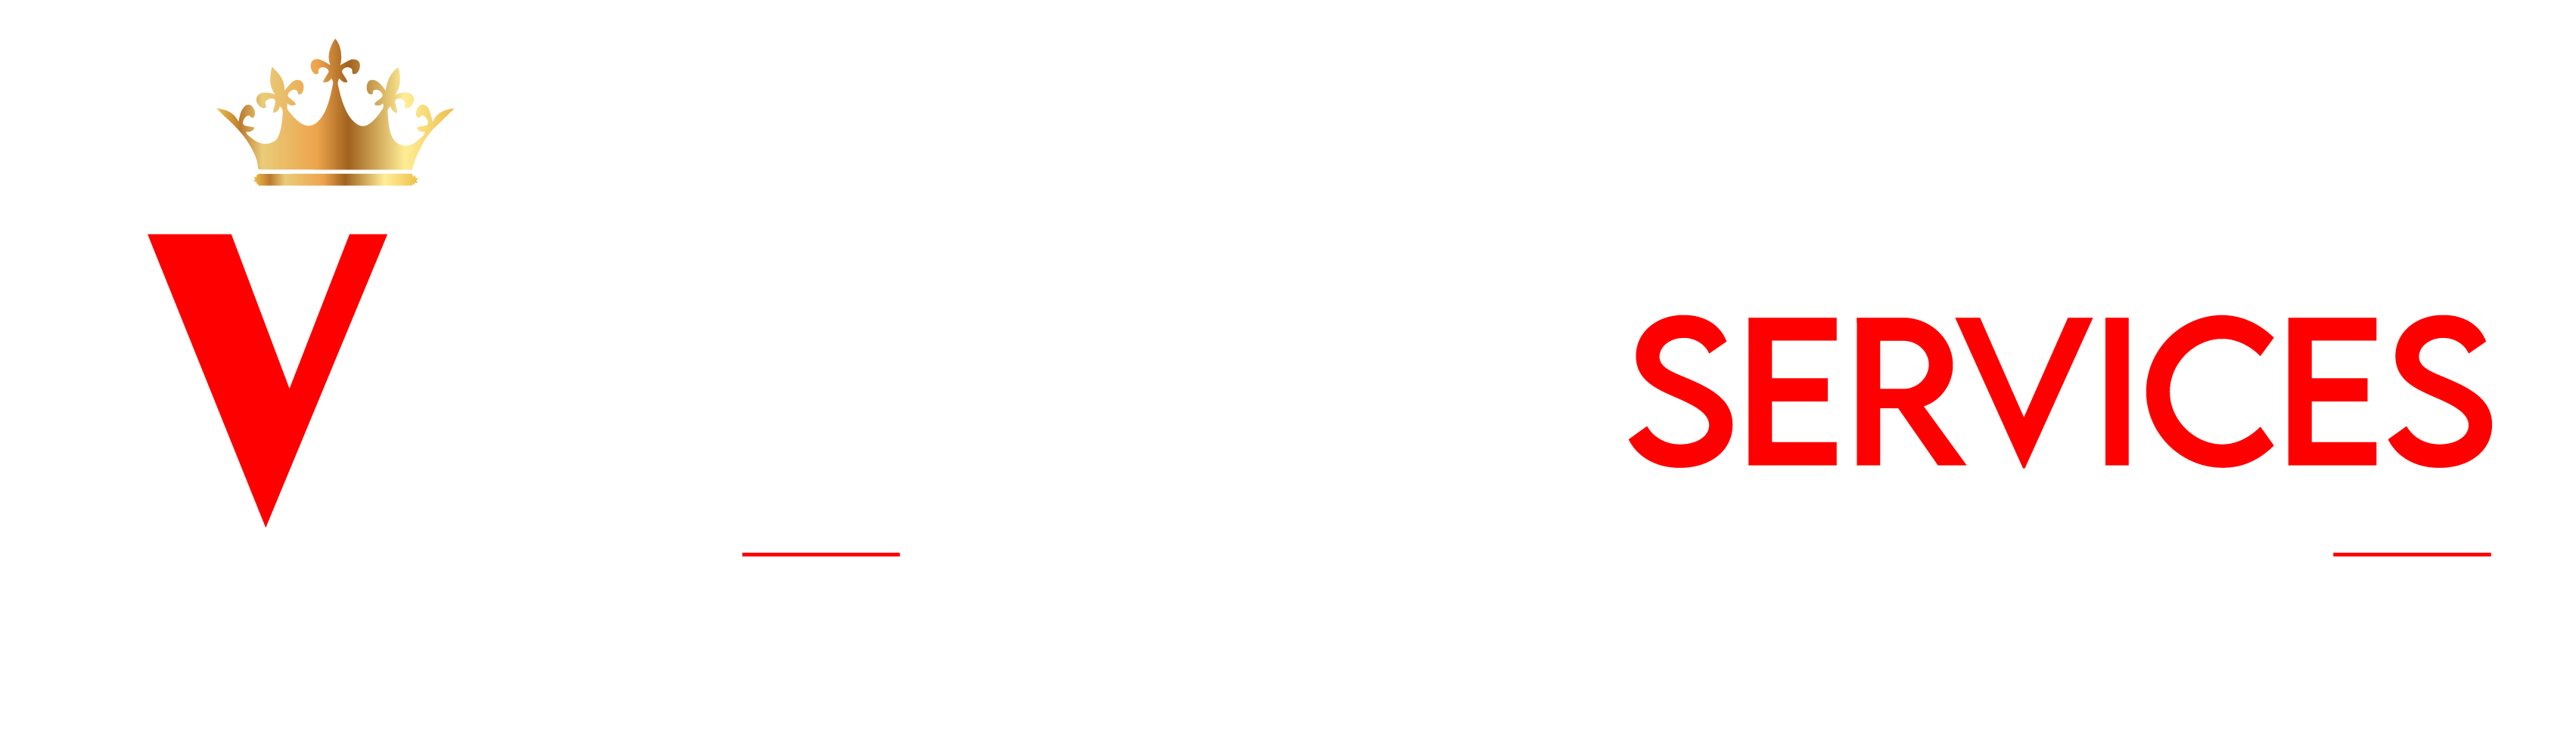 V B Global Services